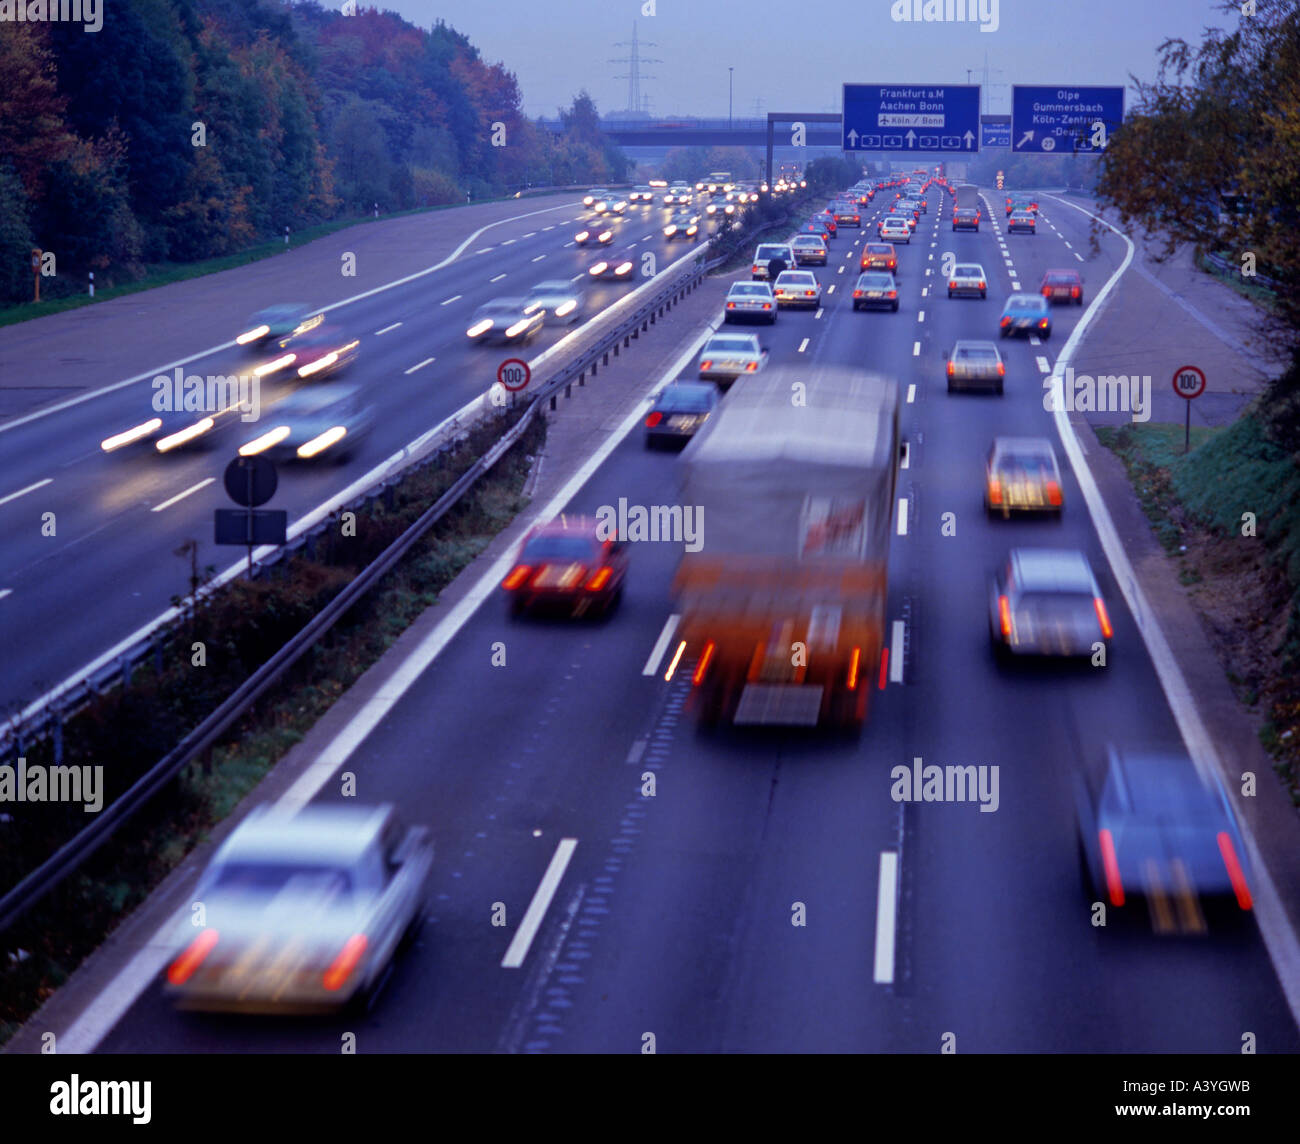 Autobahn-Verkehr am Abend in der Nähe von Köln Grafschaft von  Nordrhein-Westfalen Deutschland Stockfotografie - Alamy